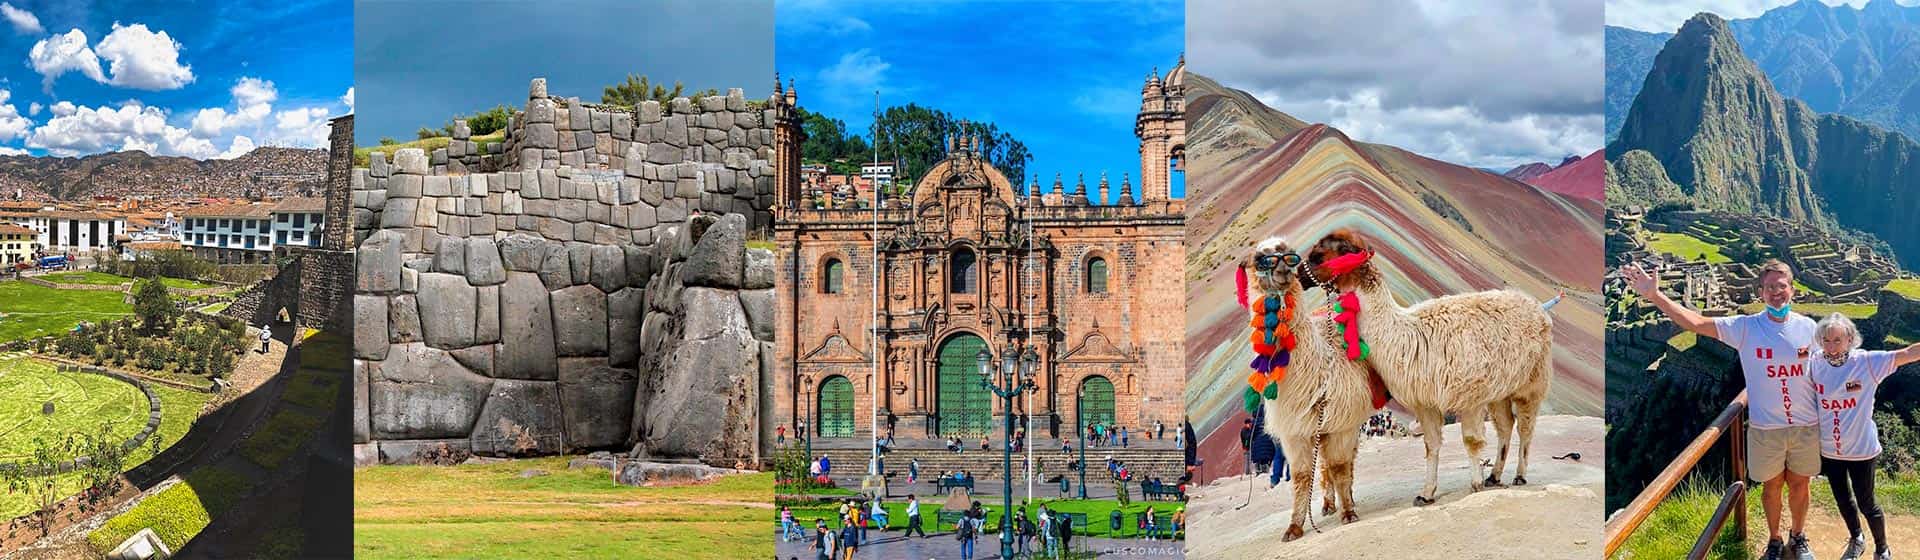 Que ver y hacer en Cusco?